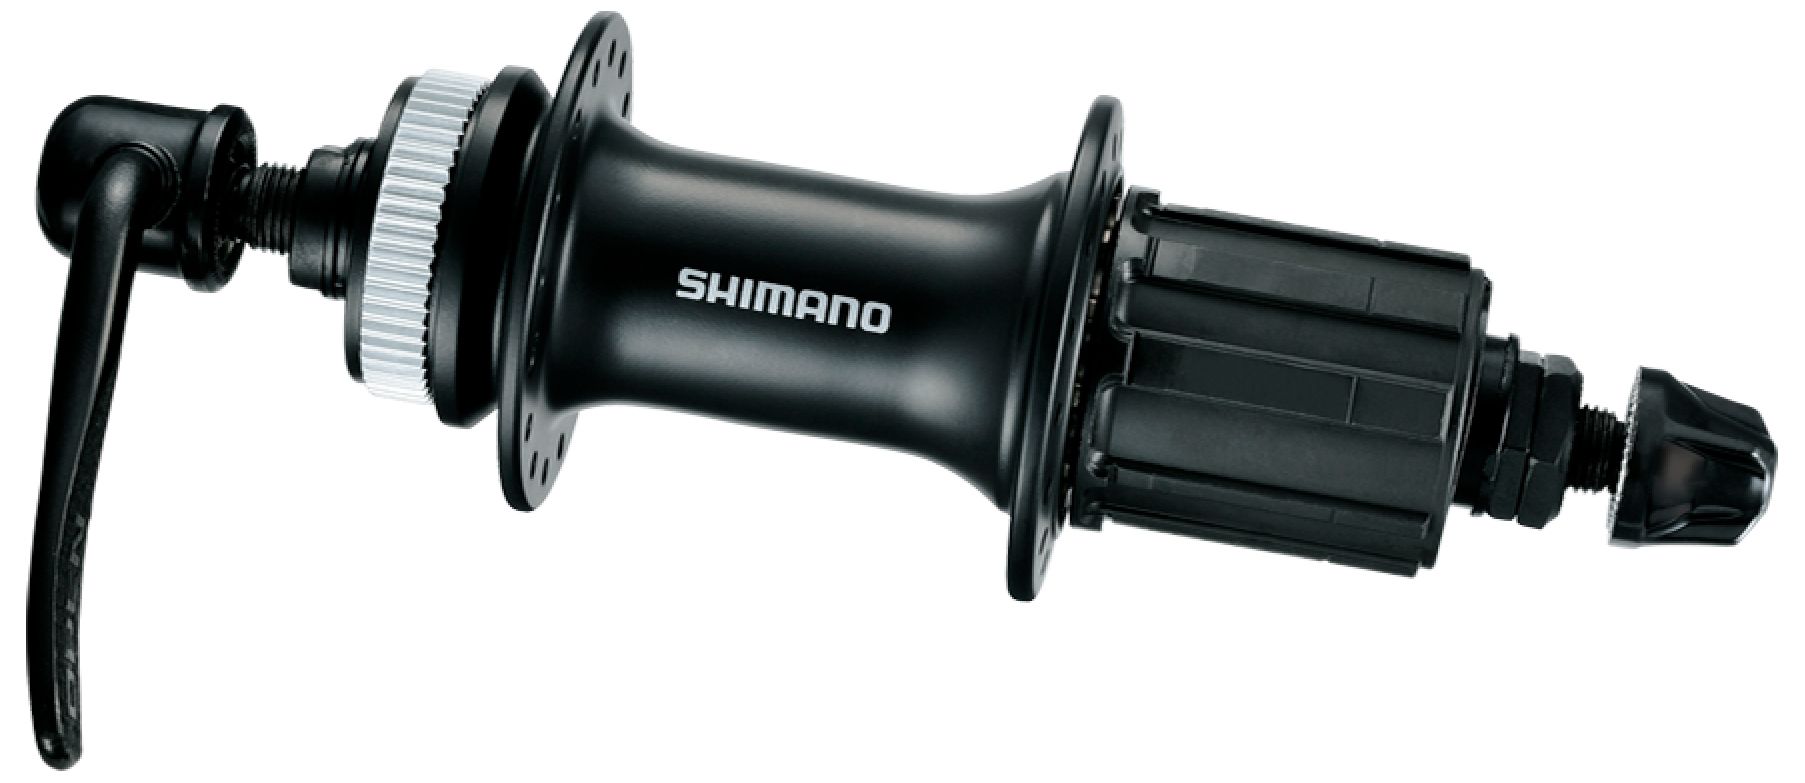  Втулка для велосипеда Shimano RM33, 32 отв, 8/9 ск. (EFHRM33BZB)